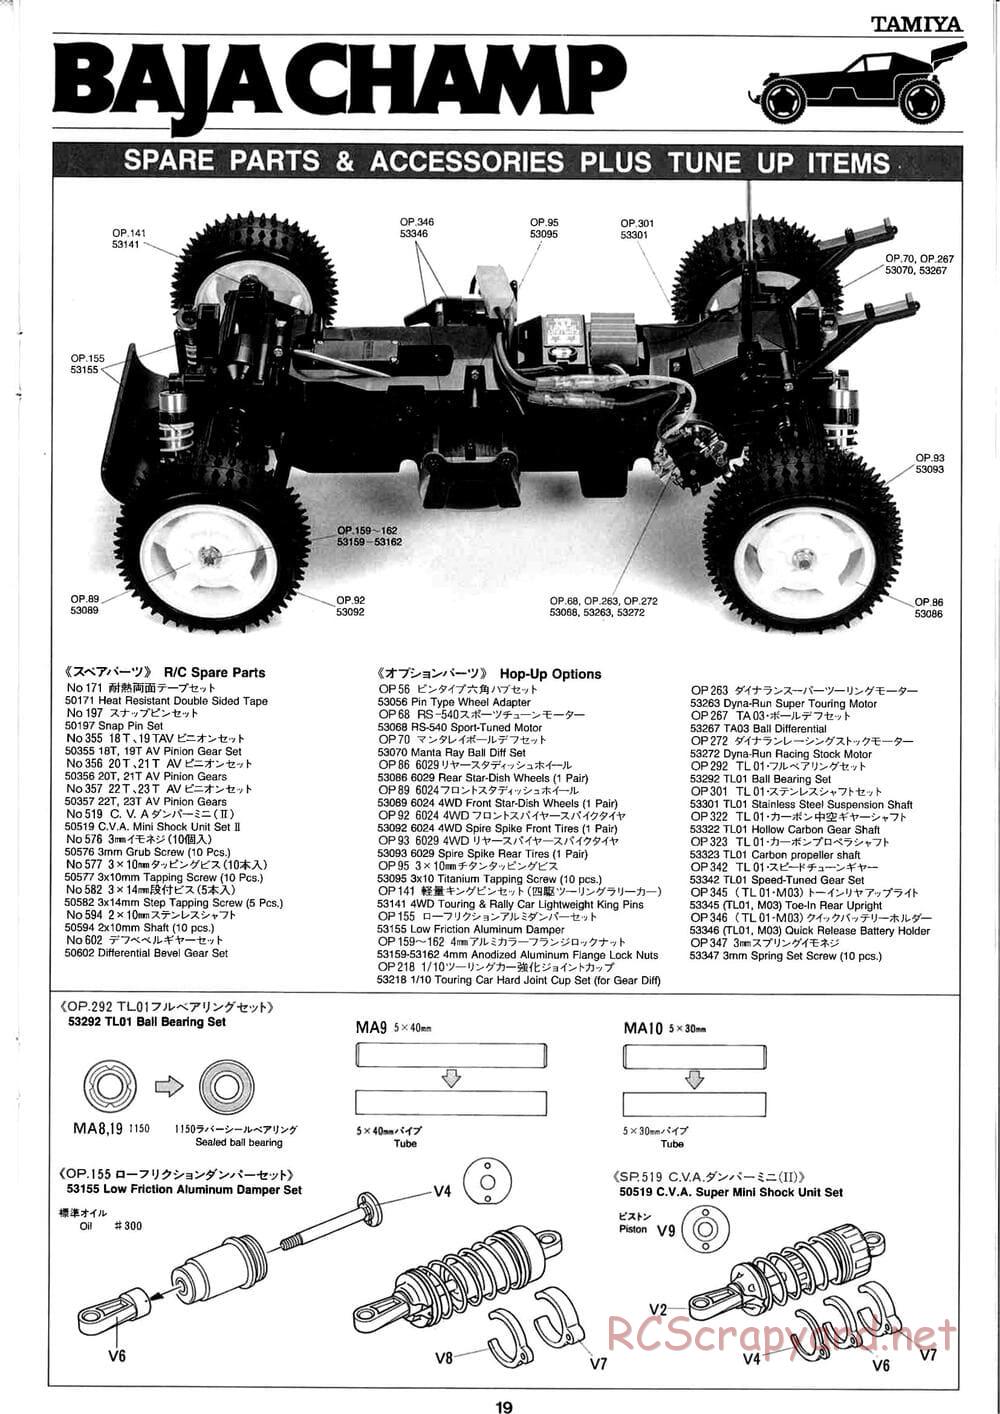 Tamiya - Baja Champ - TL-01B Chassis - Manual - Page 19